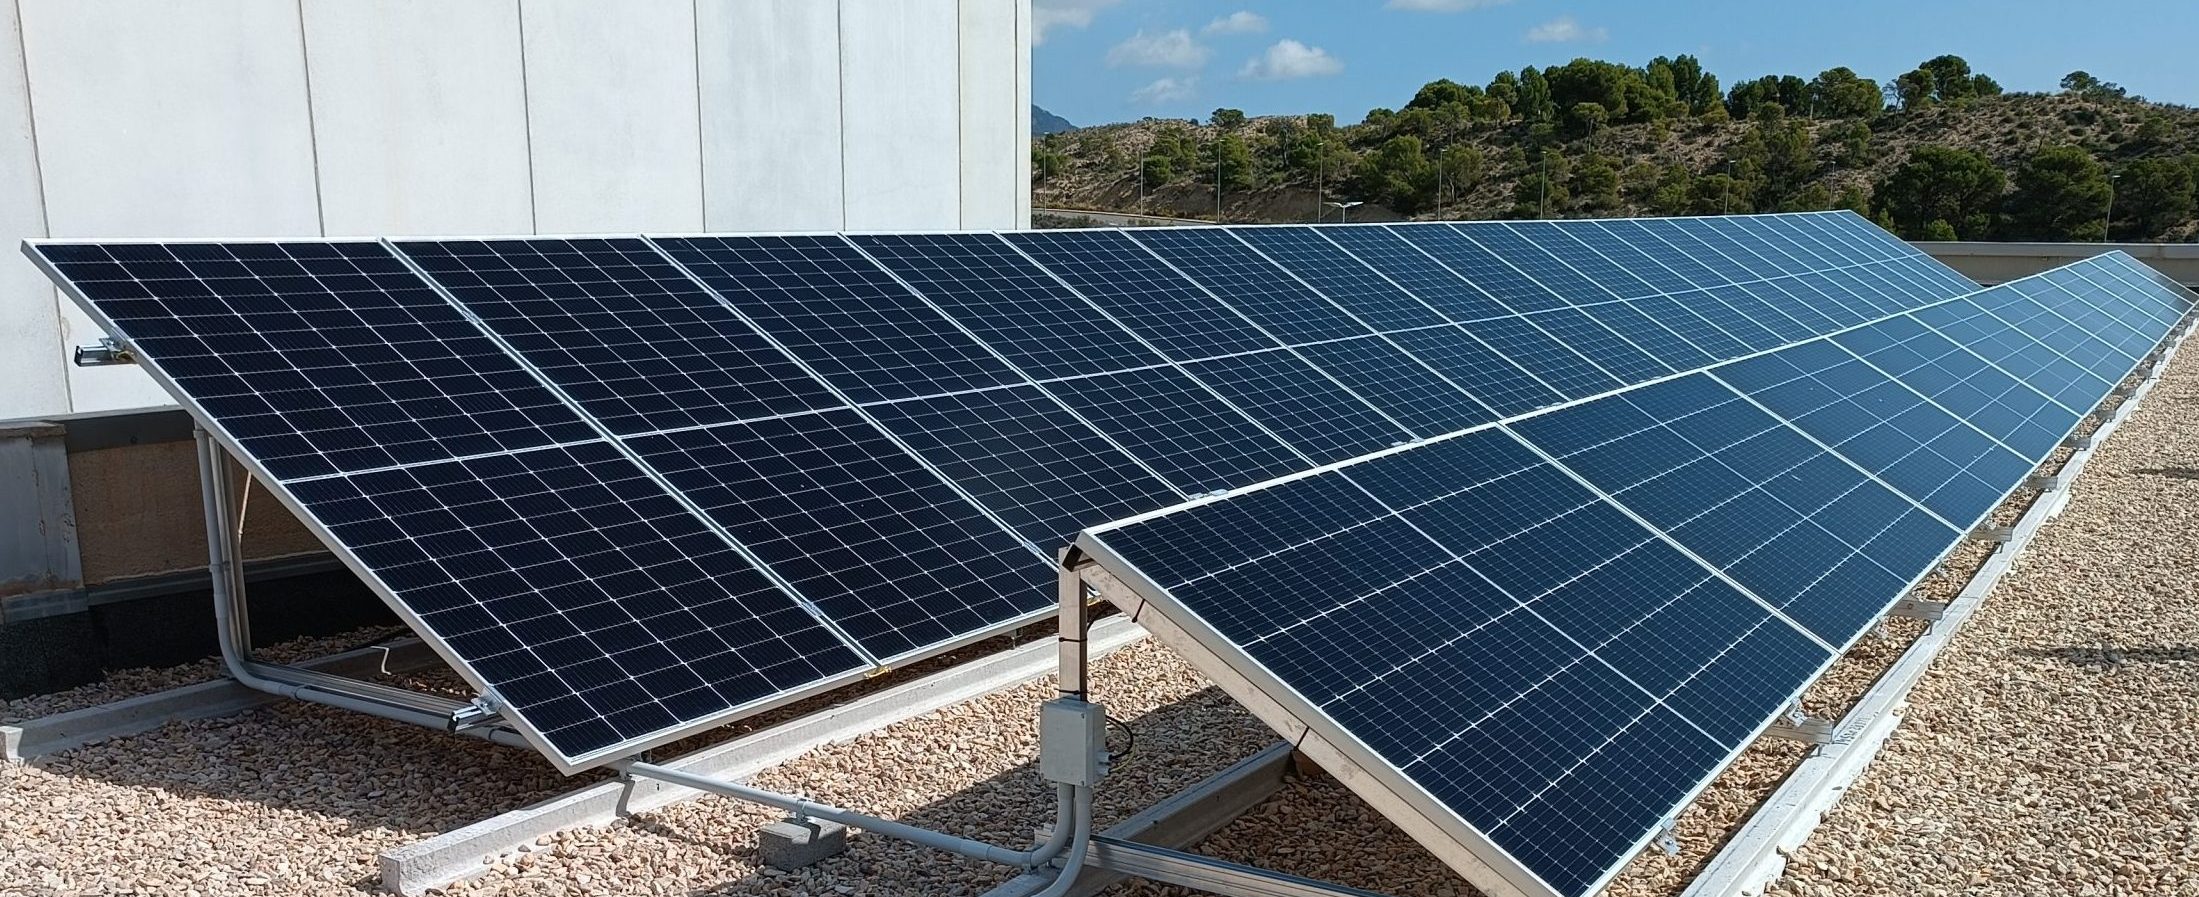 Instalación fotovoltaica Placas Solares San Vicente Alicante – Galería imagen 20